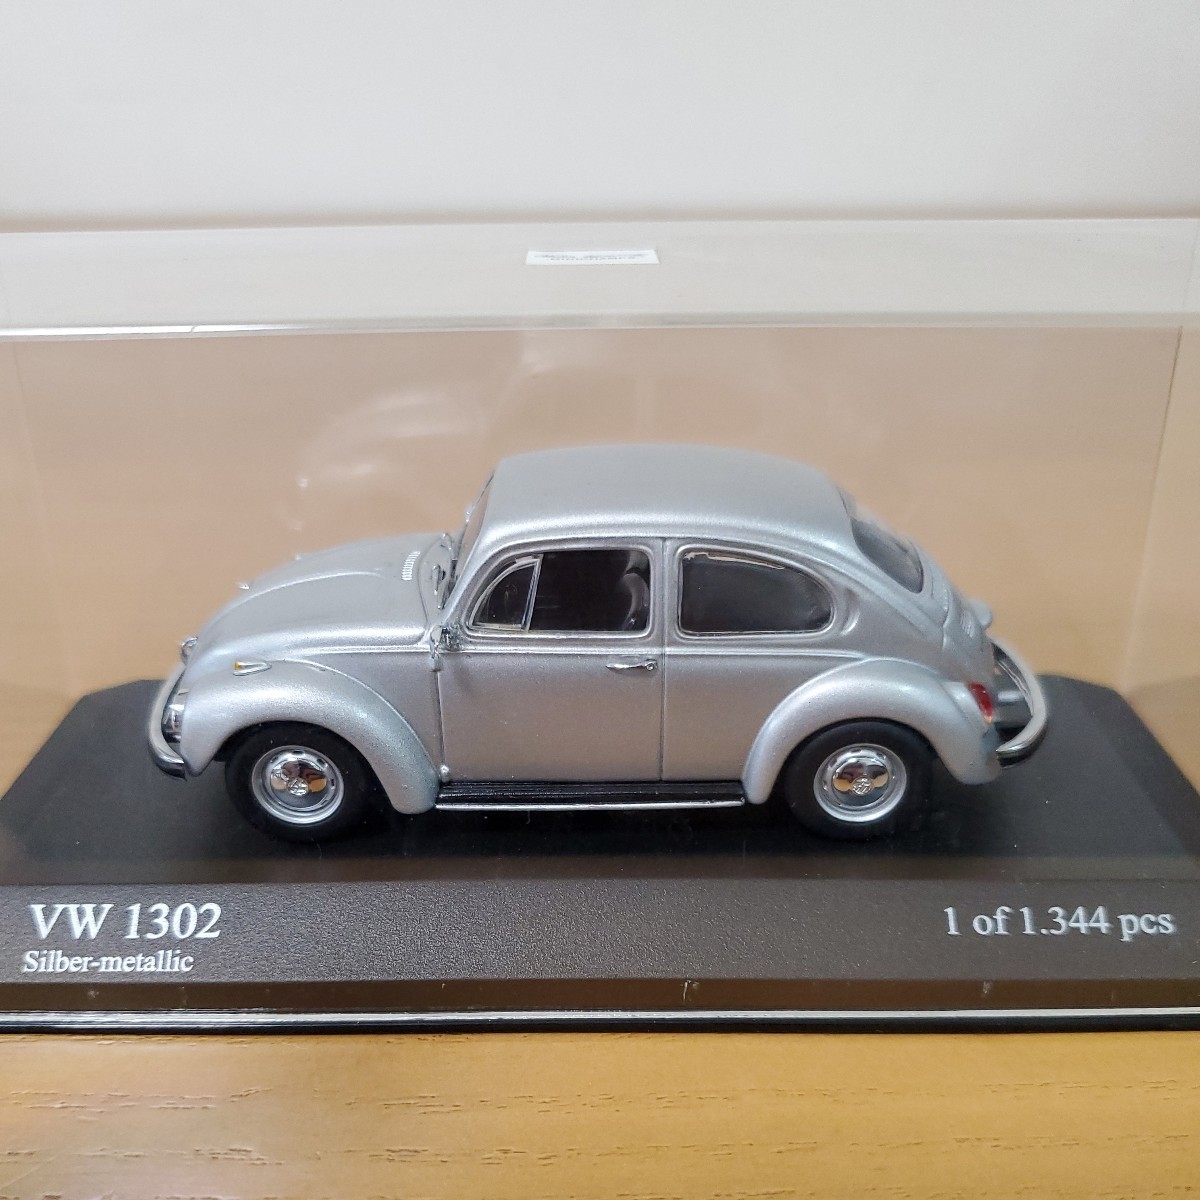 1/43 Minichamps MINICHAMPS/Volkswagen Beetle 1302 1970 Silber-metallic/ Volkswagen Beetle 1302 серебряно-металлический 